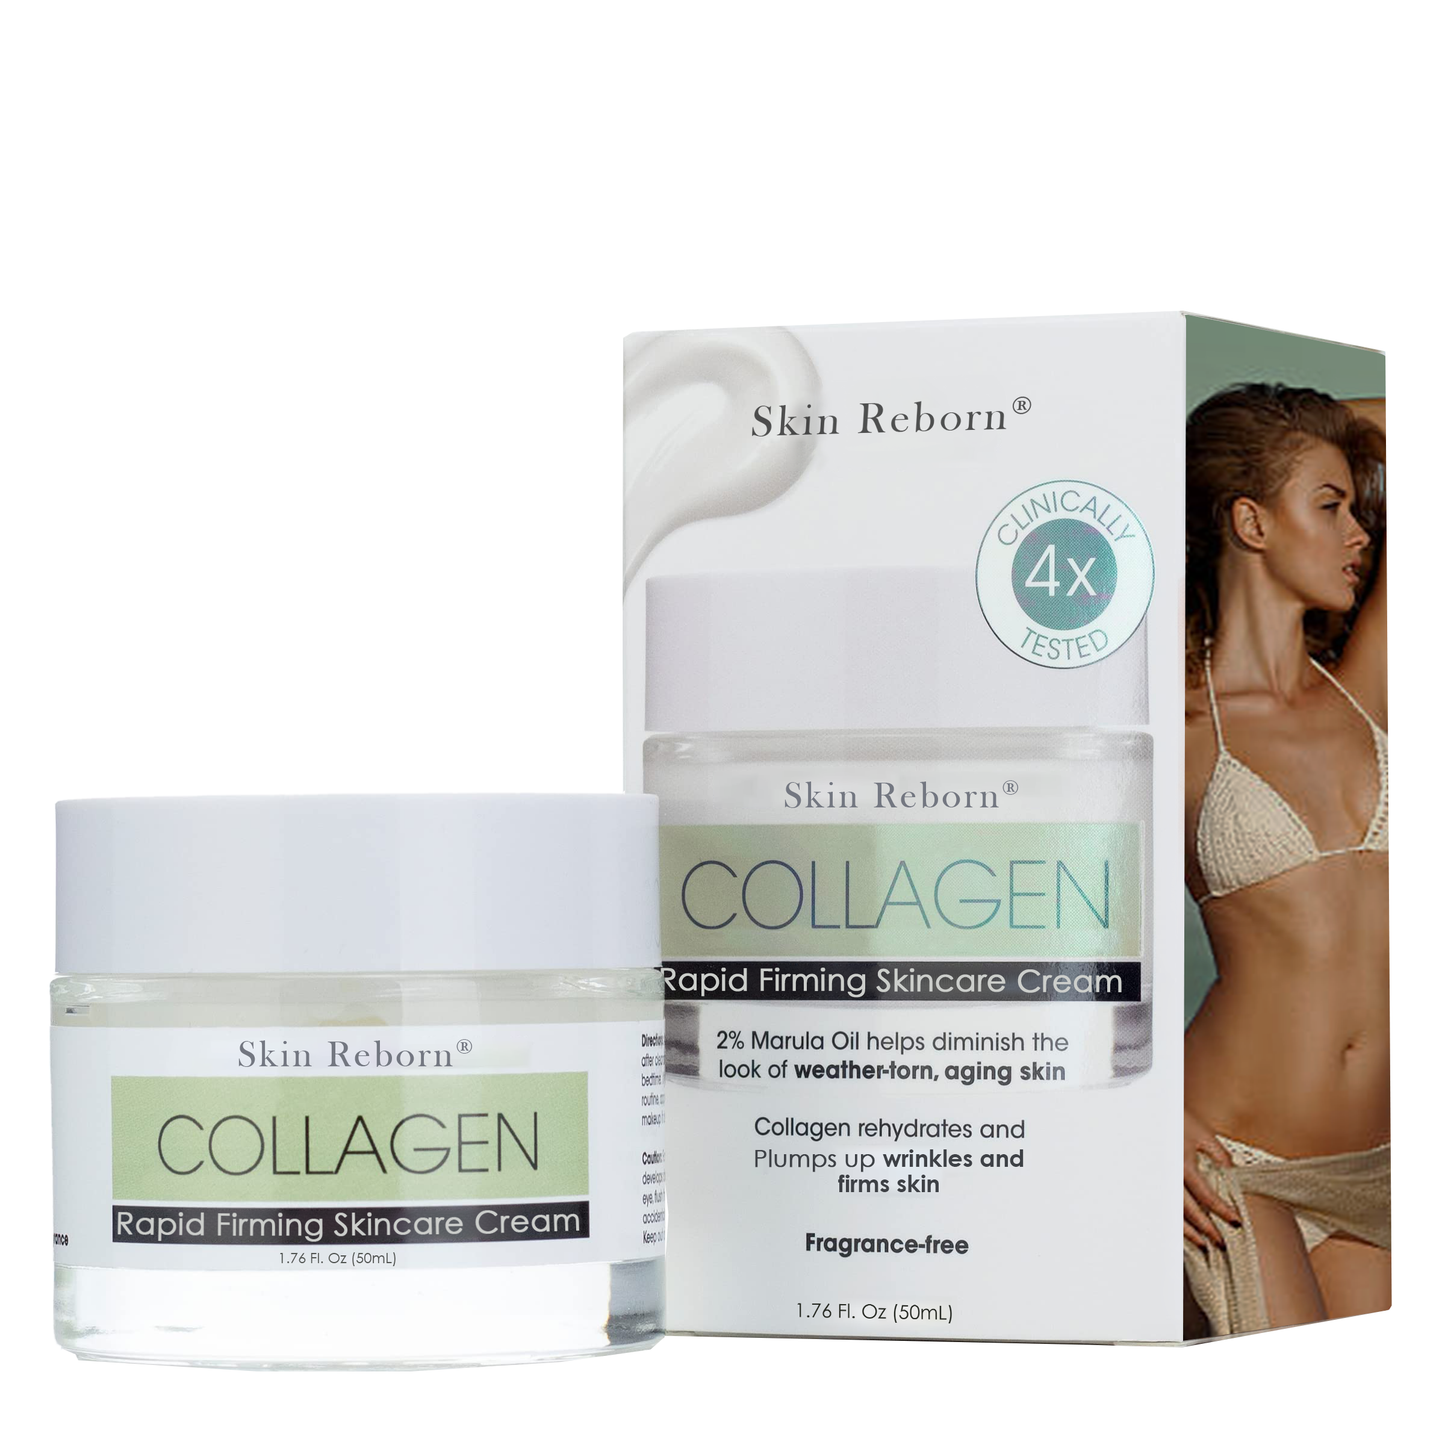 Reborn Skin® Collagen Boost cremă de strângere și lifting rapidă